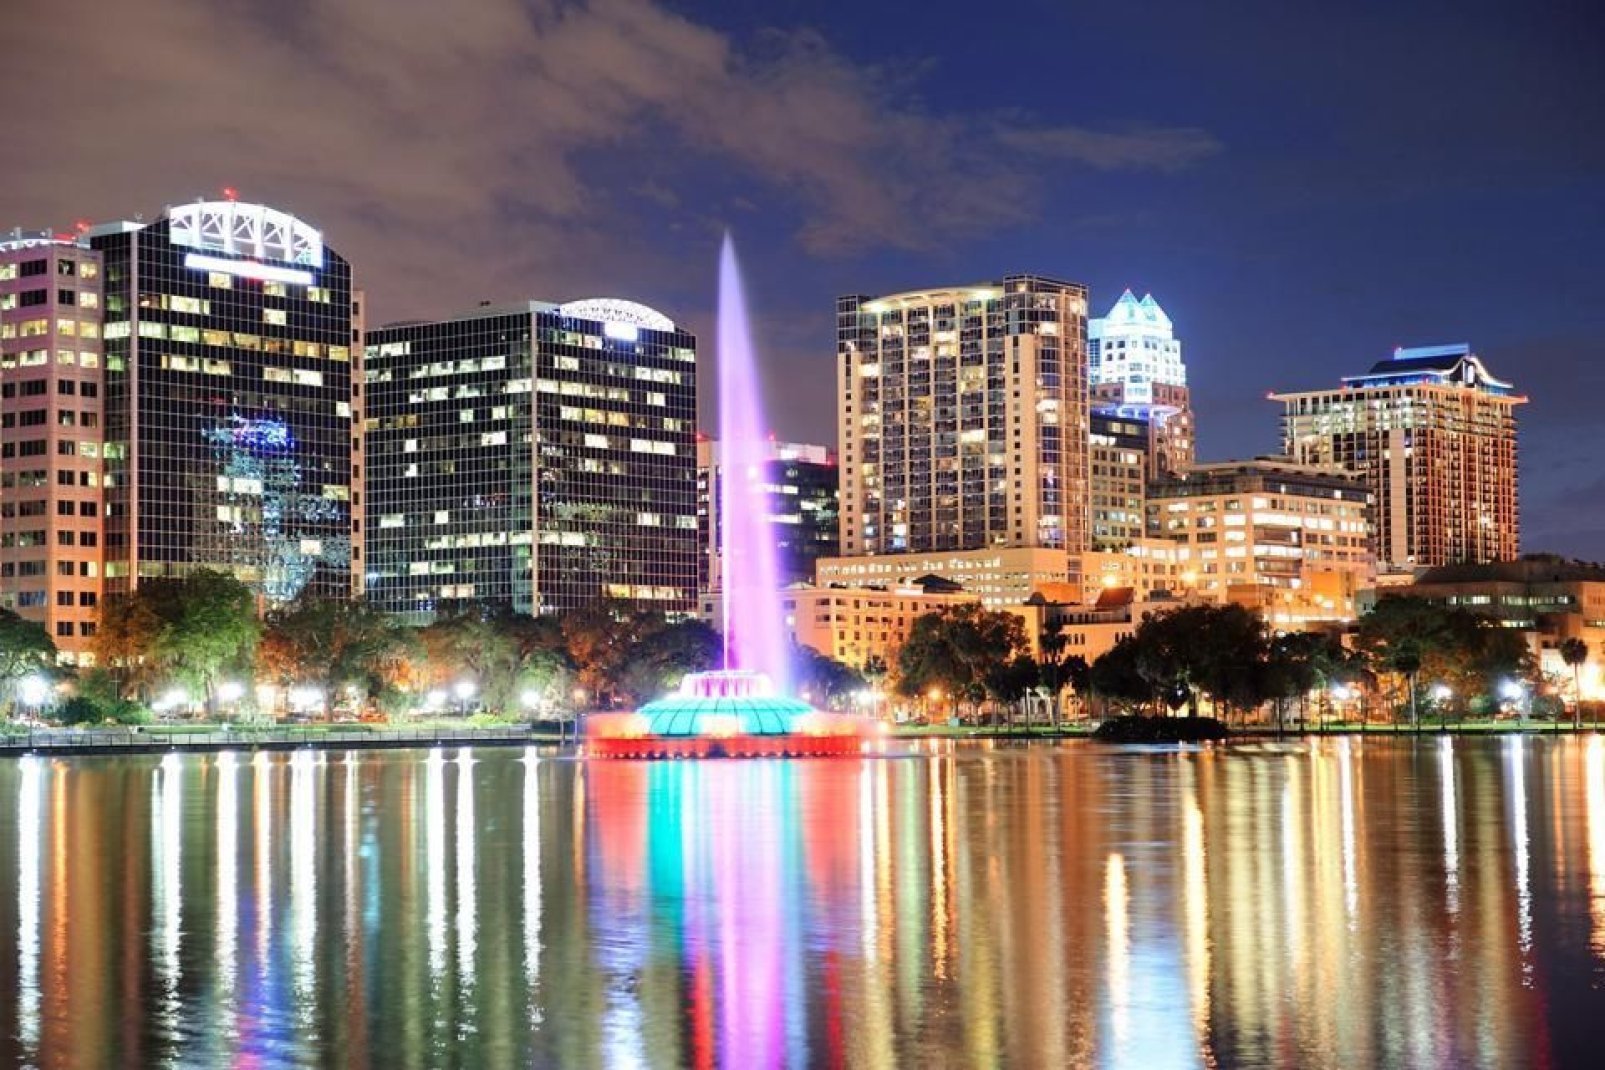 La fontaine du lac Eola dans le centre ville d'Orlando offre un beau panorama nocturne de la ville.